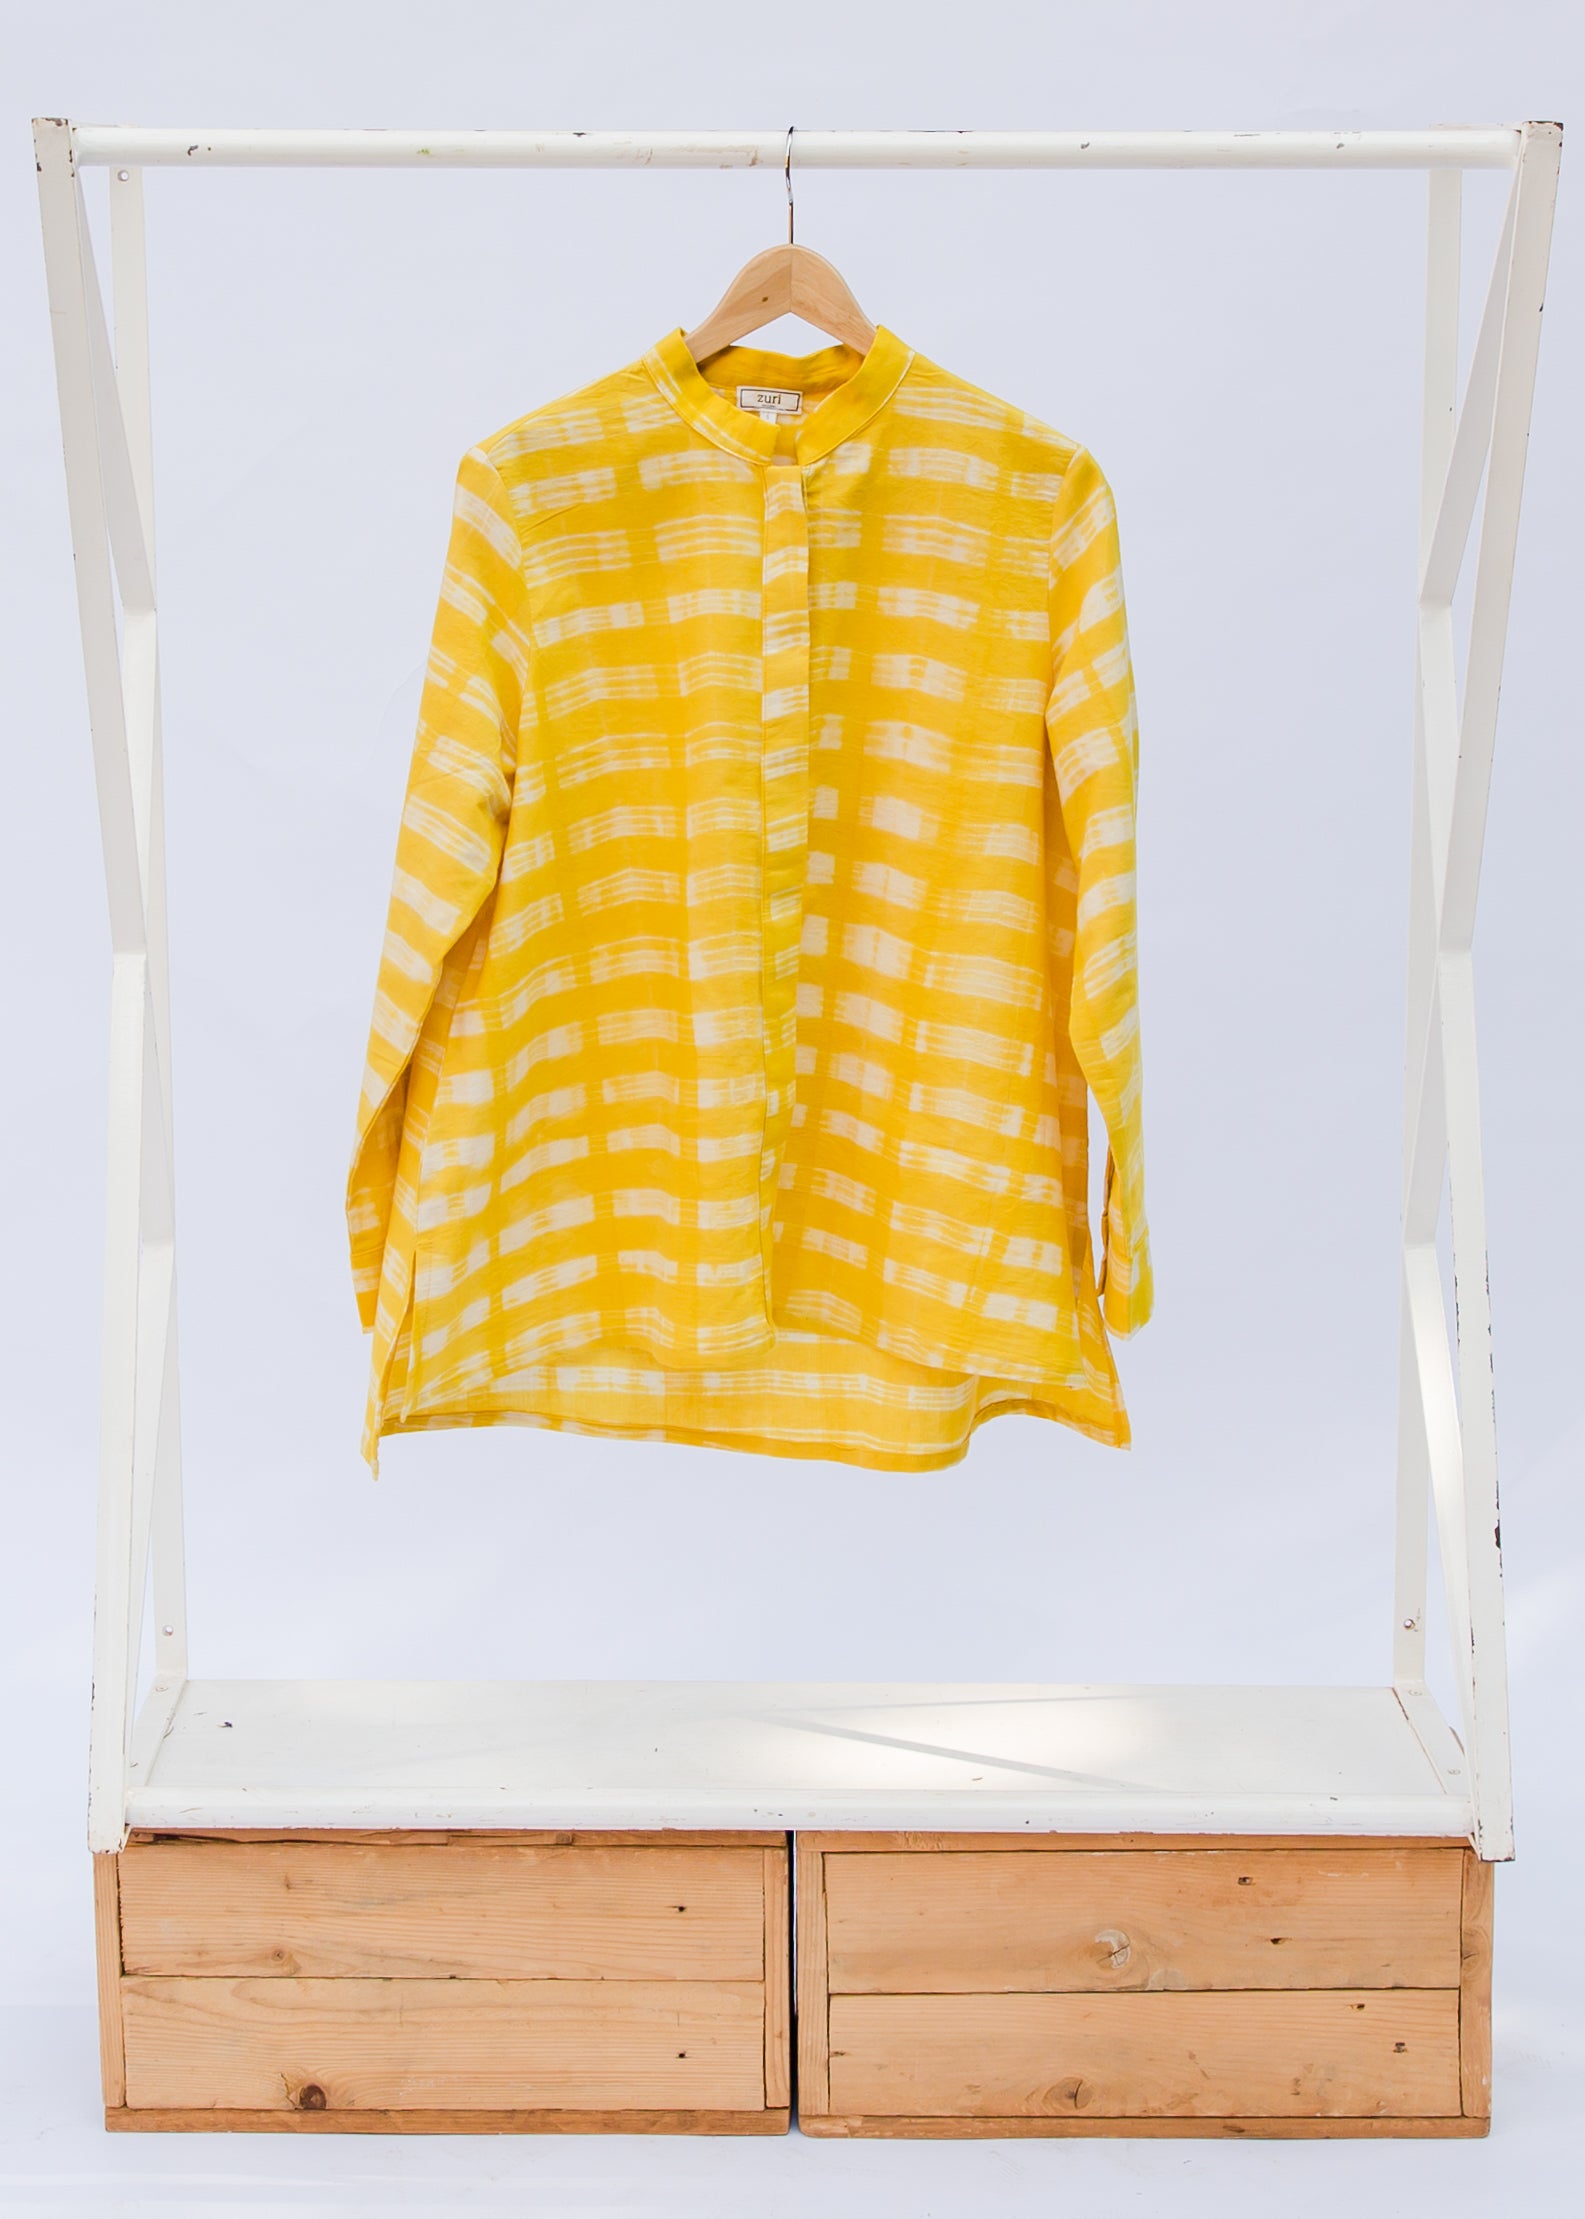 Yellow stitch resist shirt